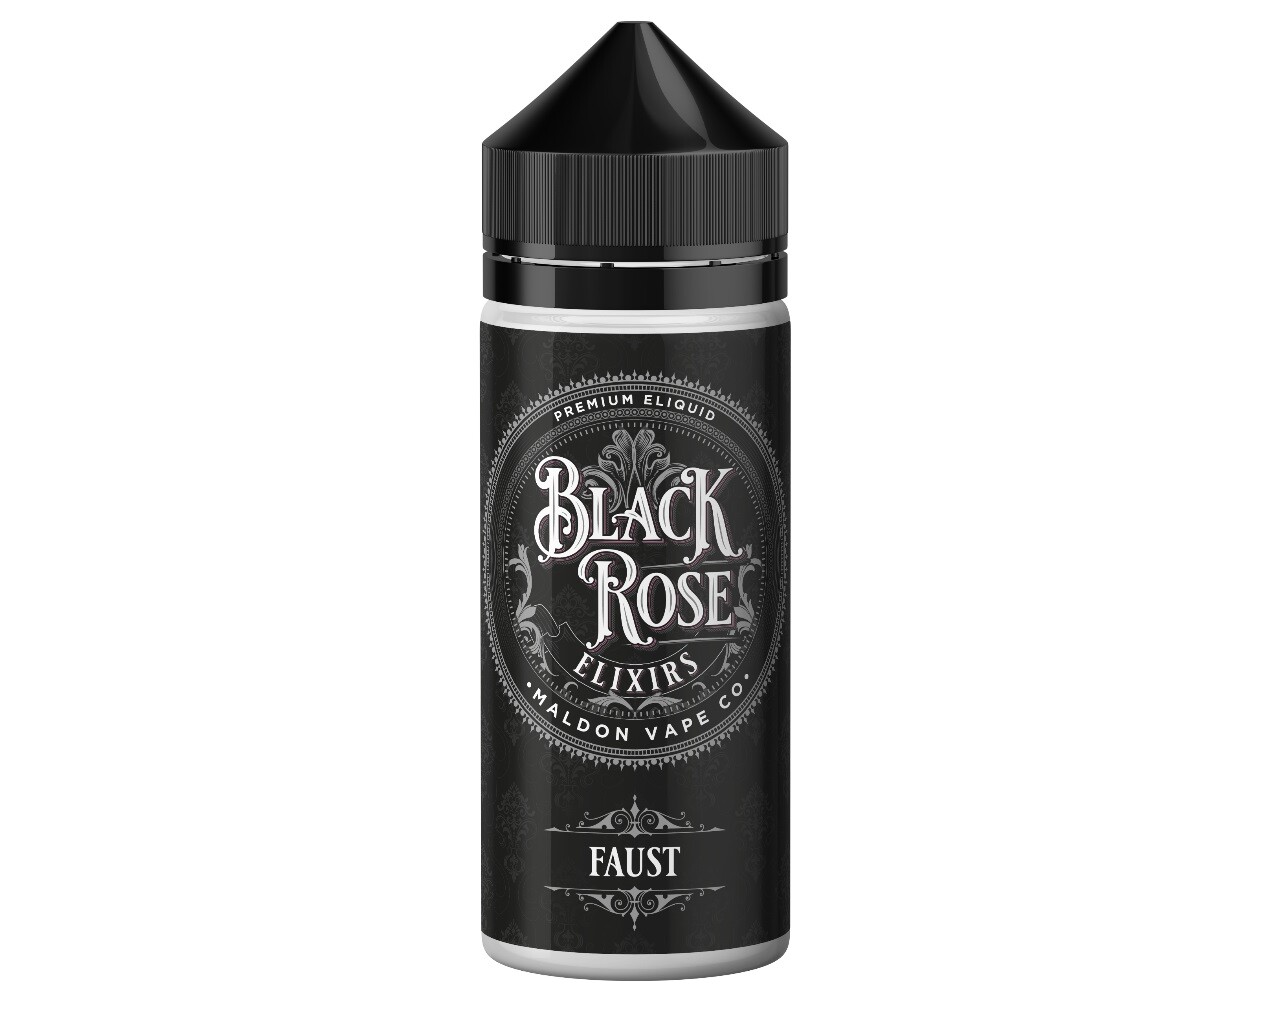 faust flavoured e-liquid 100ml bottle black rose elixirs